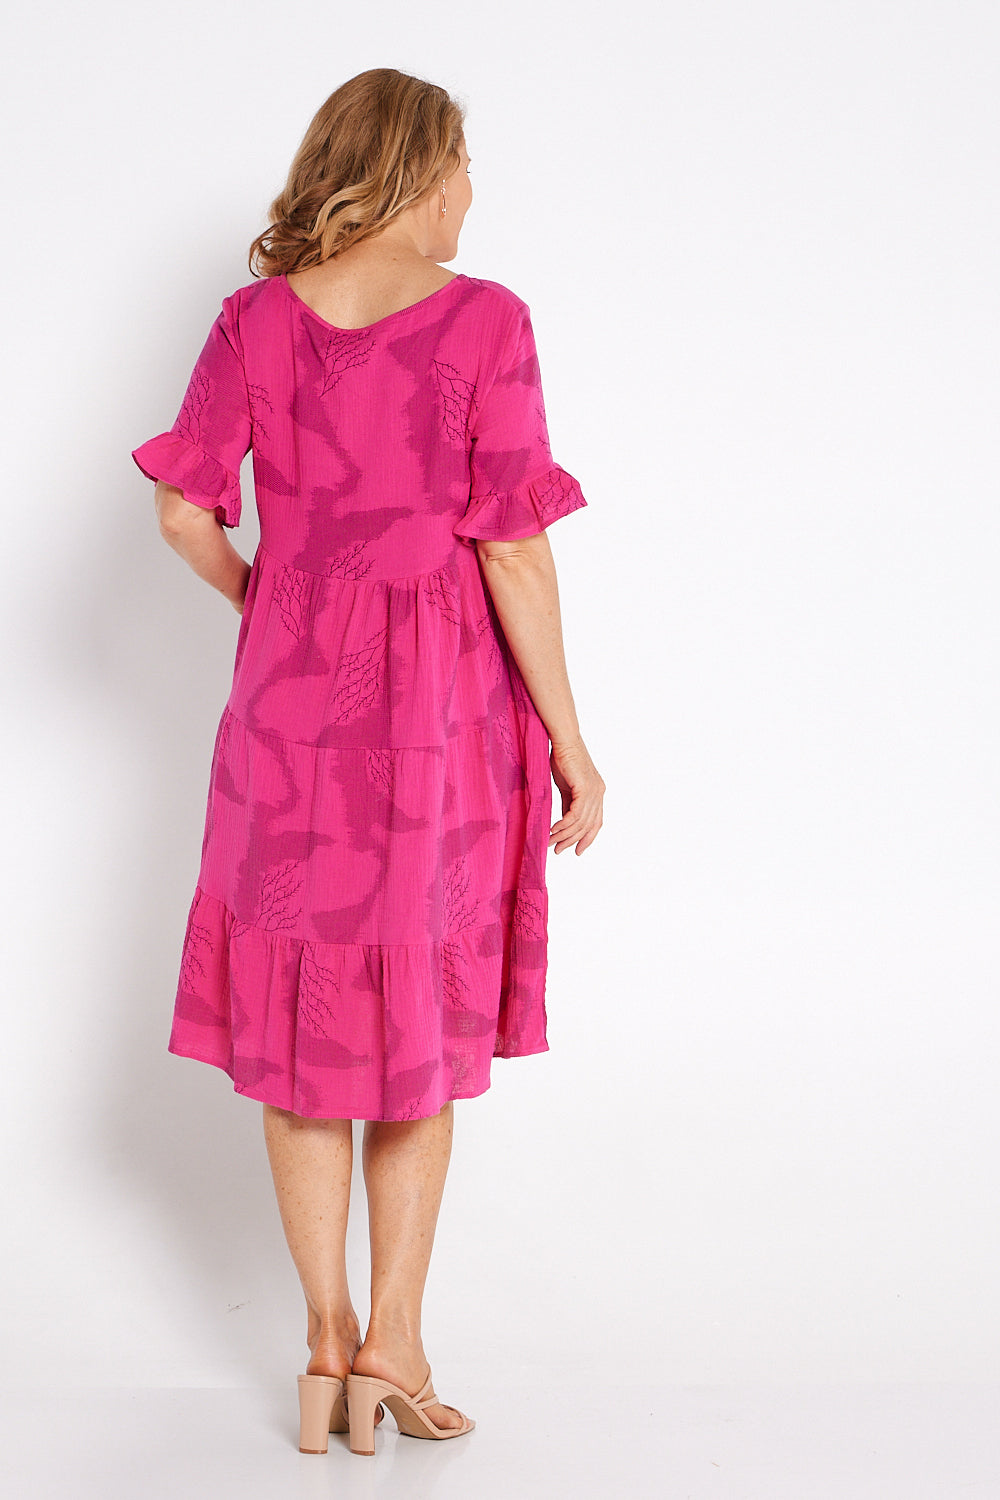 Jackson Cotton Muslin Dress - Hot Pink Print